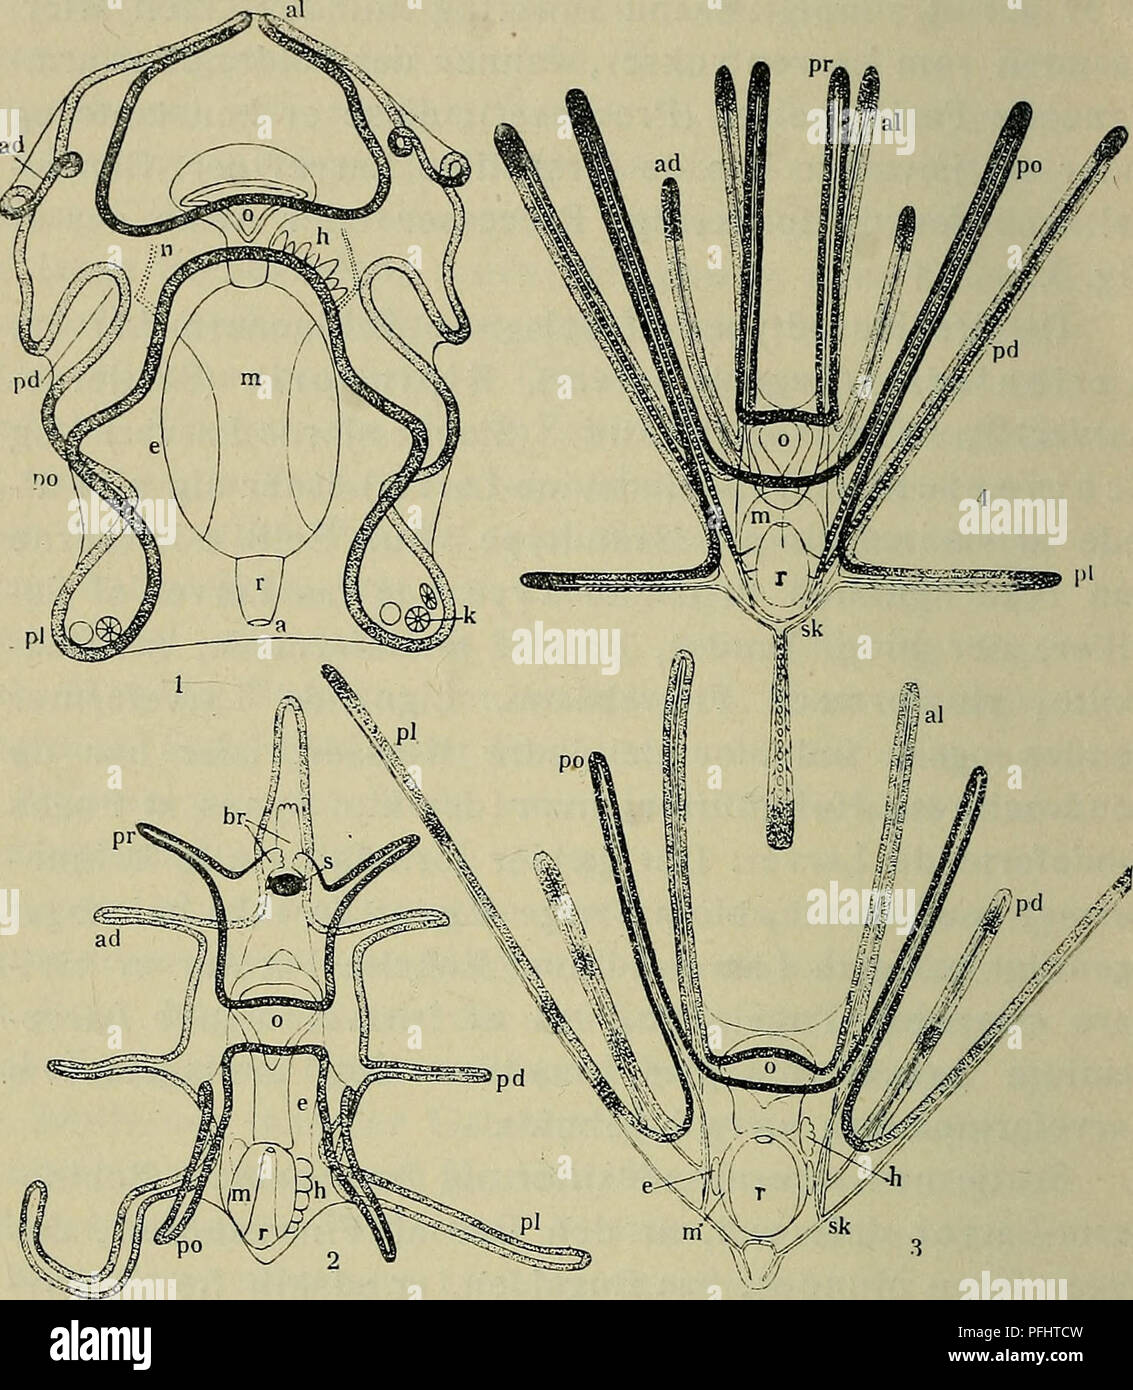 . Danmarks fauna; illustrerede haandbøger over den danske dyreverden... 8. Fig. 3. De 4 Hovedtyper af Echlnodermlarver. 1. Auricularia, Larve af en Søpølse (Synapta); 2. Bipinnaria (i Brachiolaria-Stadiet), Larve af en Søstjerne (Asterias); 3. Ophiopluteus compressus, Larve af en Slangestjerne; 4. Echinopluteus, Larve af et Søpind- svin (Echinocardium cordatum). L efter Semon; 2. efter A. Agassiz, lidt ændret, a. Gataabning; ad. anterodorsale ell. forreste Rygarm; al. antero- laterale ell. forreste Sidearm; br. Brachiolaria-Arme; e. Enterocøl- blærer; h. Anlæg til Vandkanalsystemet (Hydrocølet Stock Photo